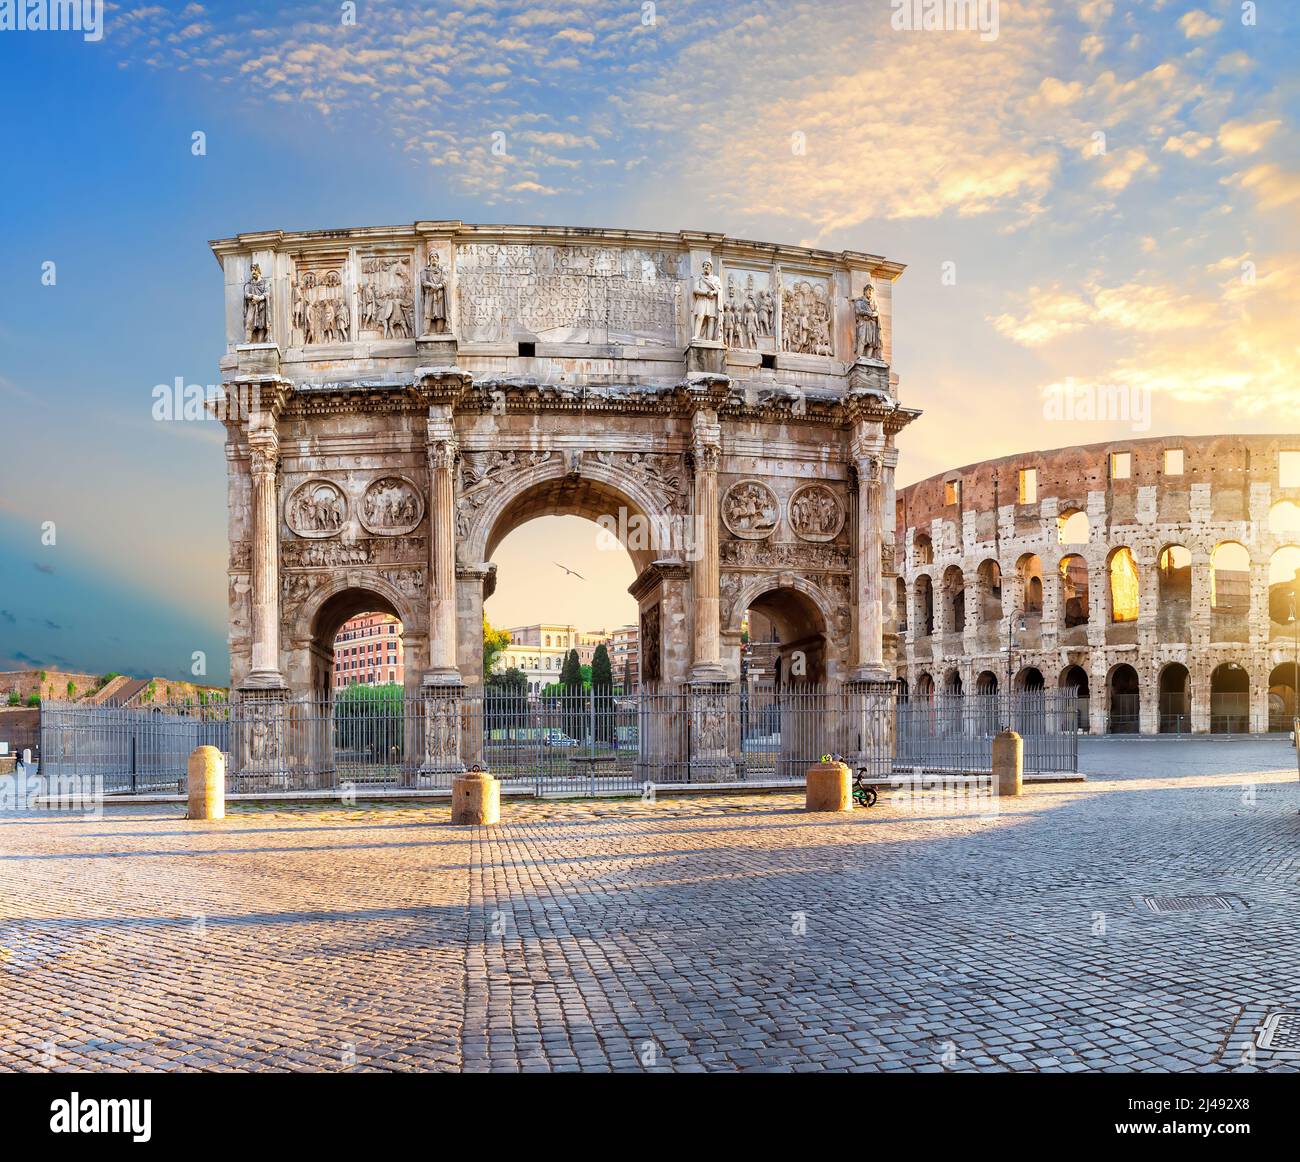 L'Arc de Constantine près du Colisée, célèbre arc triomphal de Rome, Italie Banque D'Images